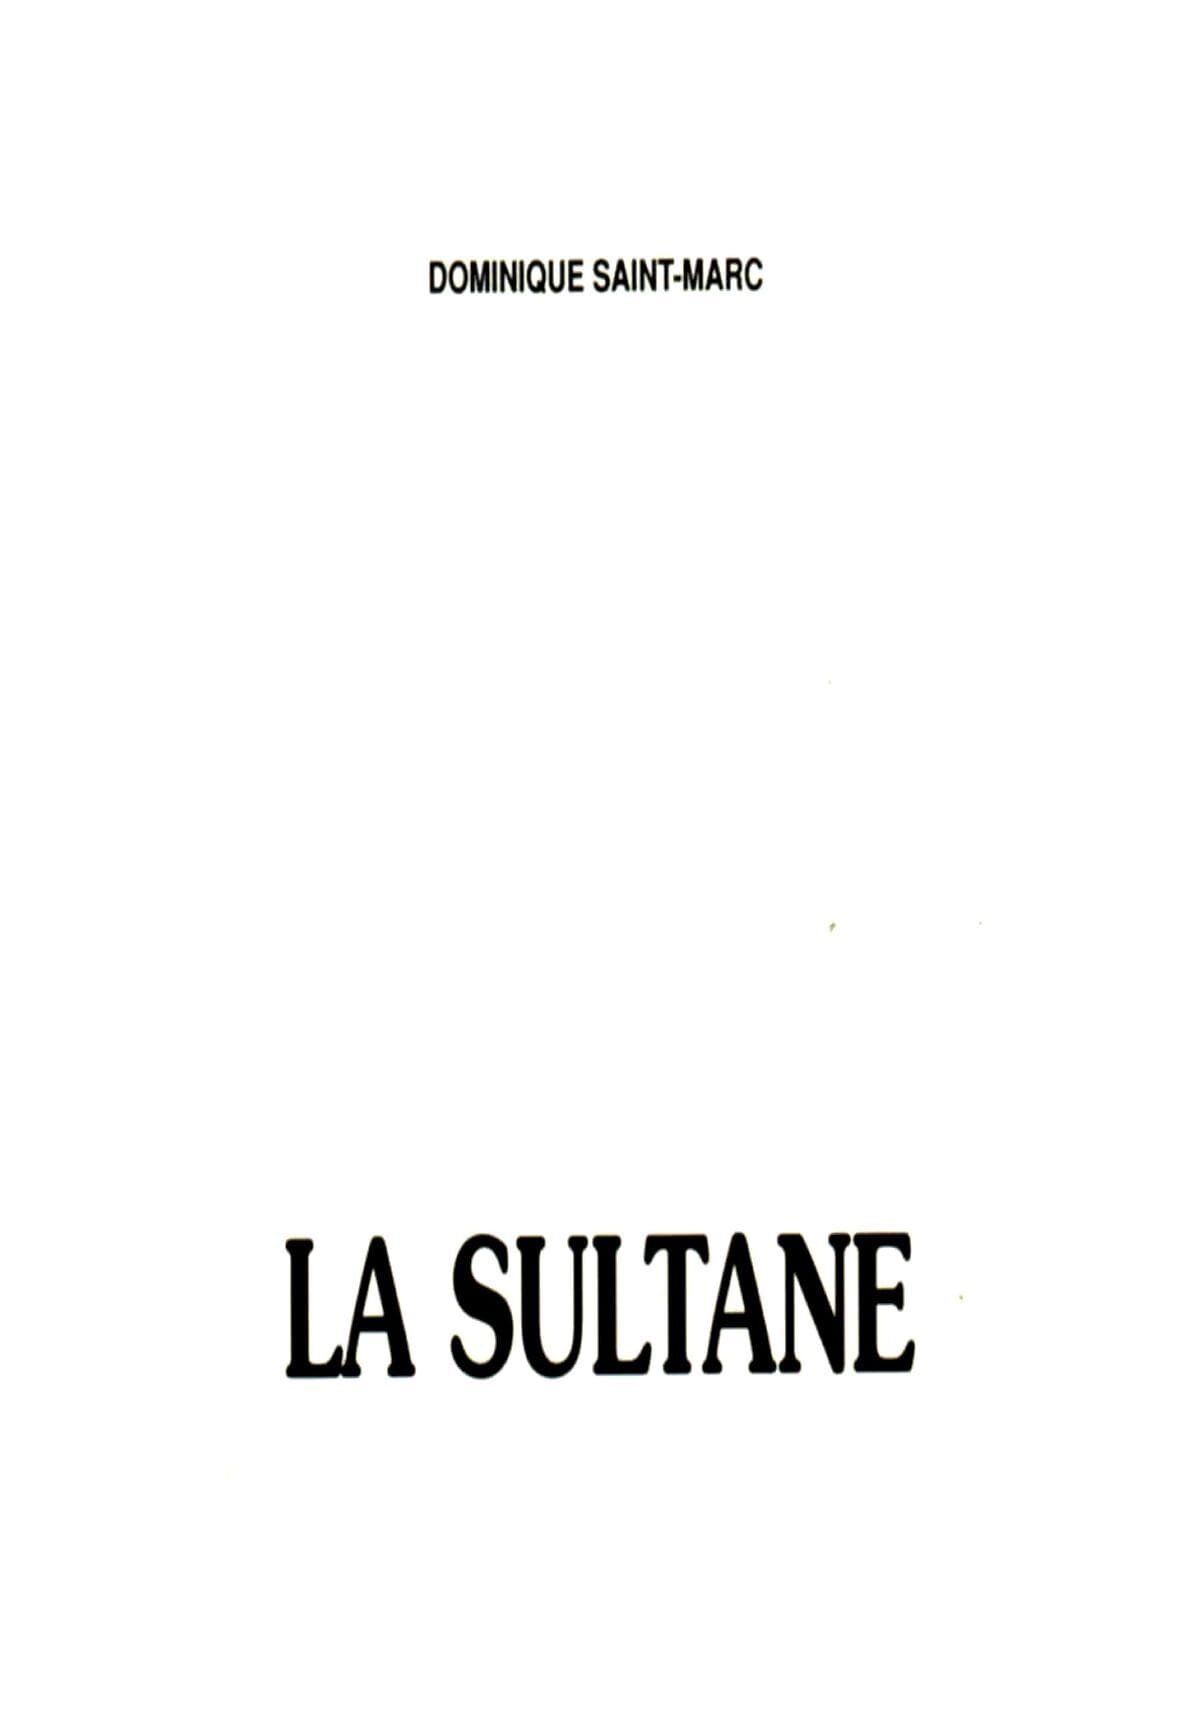 La سلطان page 1